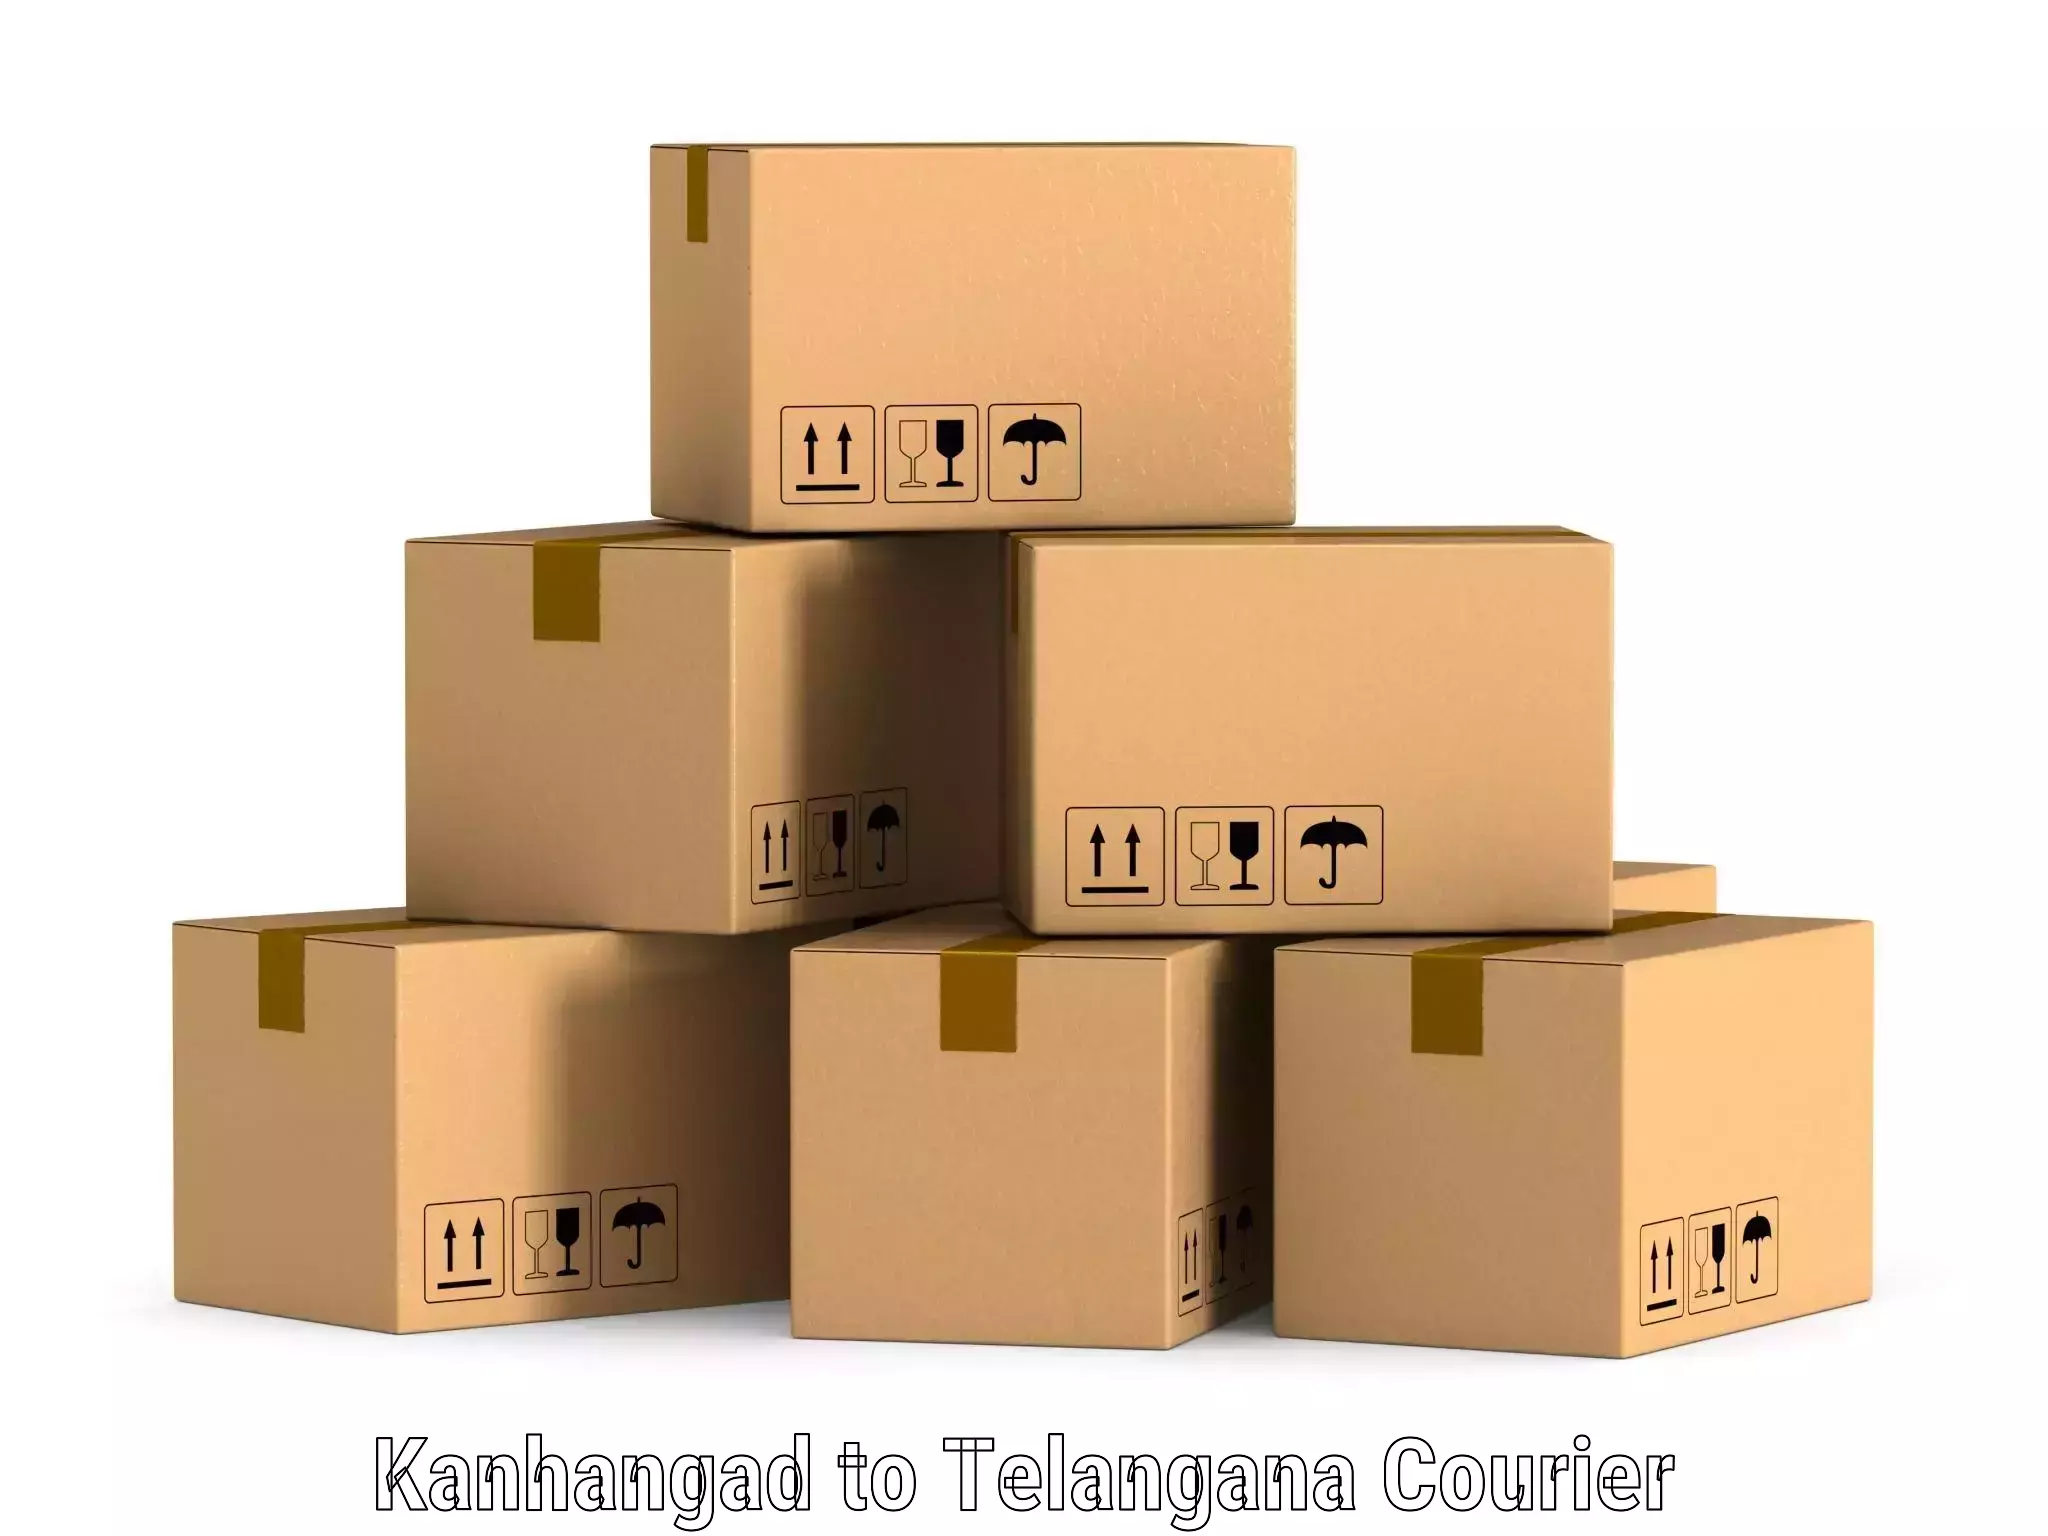 Supply chain efficiency Kanhangad to Telangana